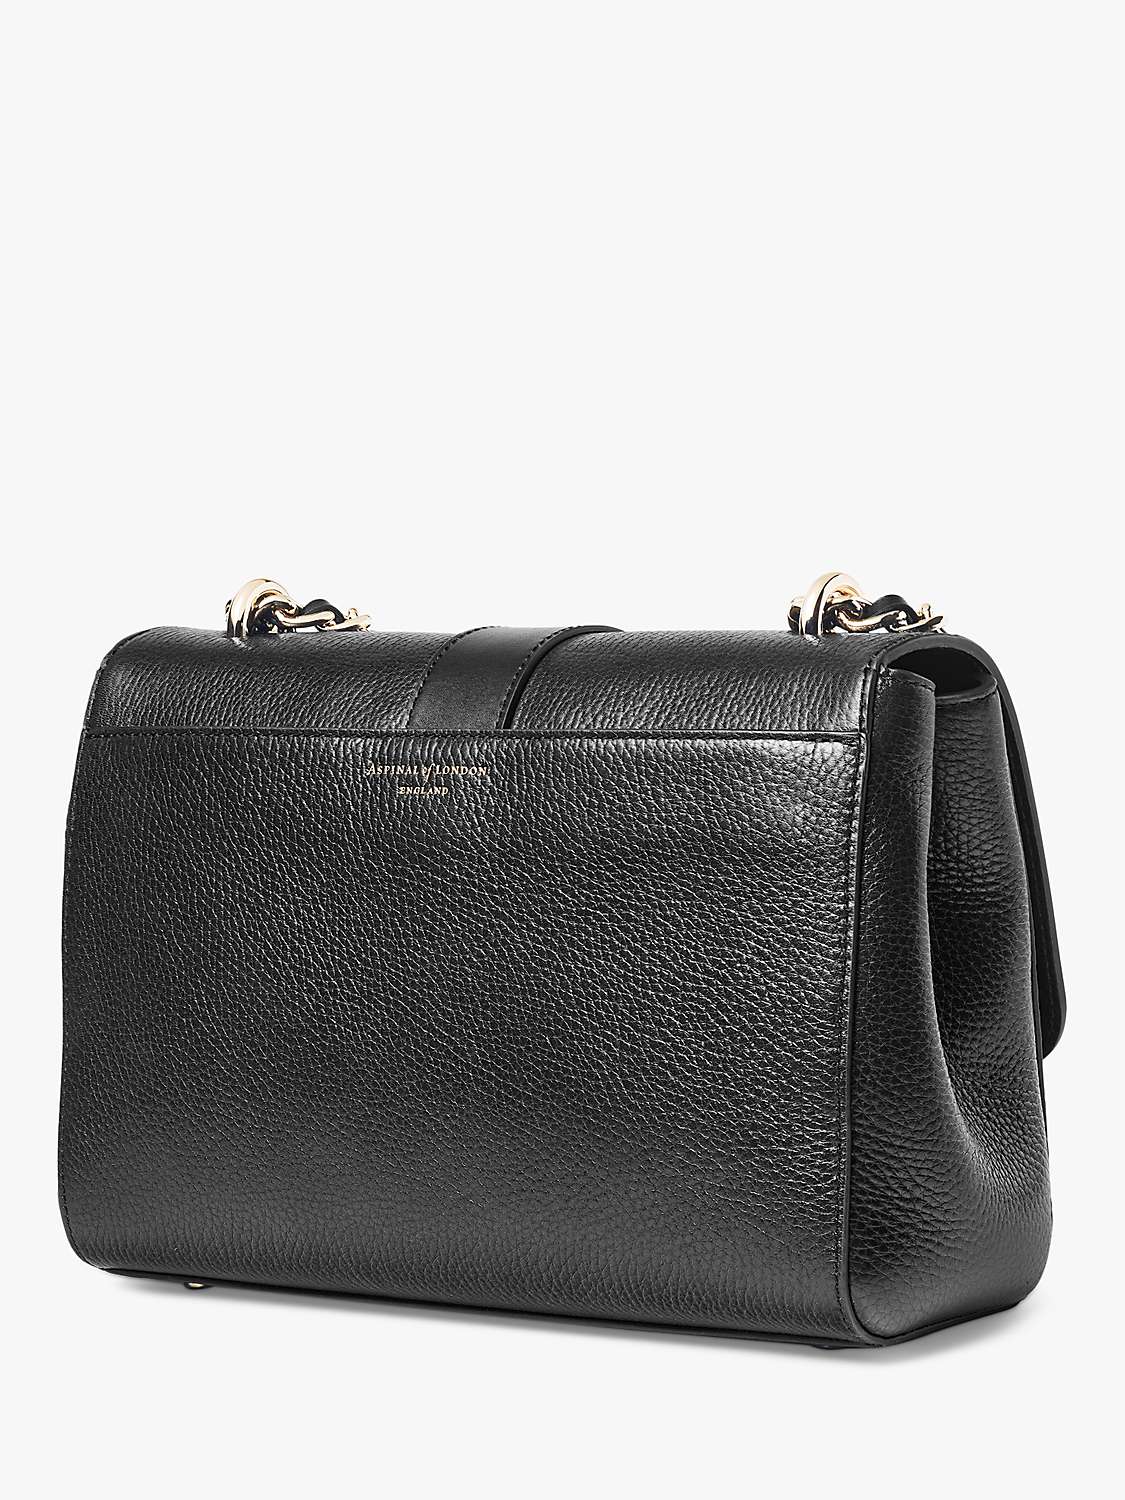 Buy Aspinal of London Lottie Large Pebble Leather Shoulder Bag Online at johnlewis.com